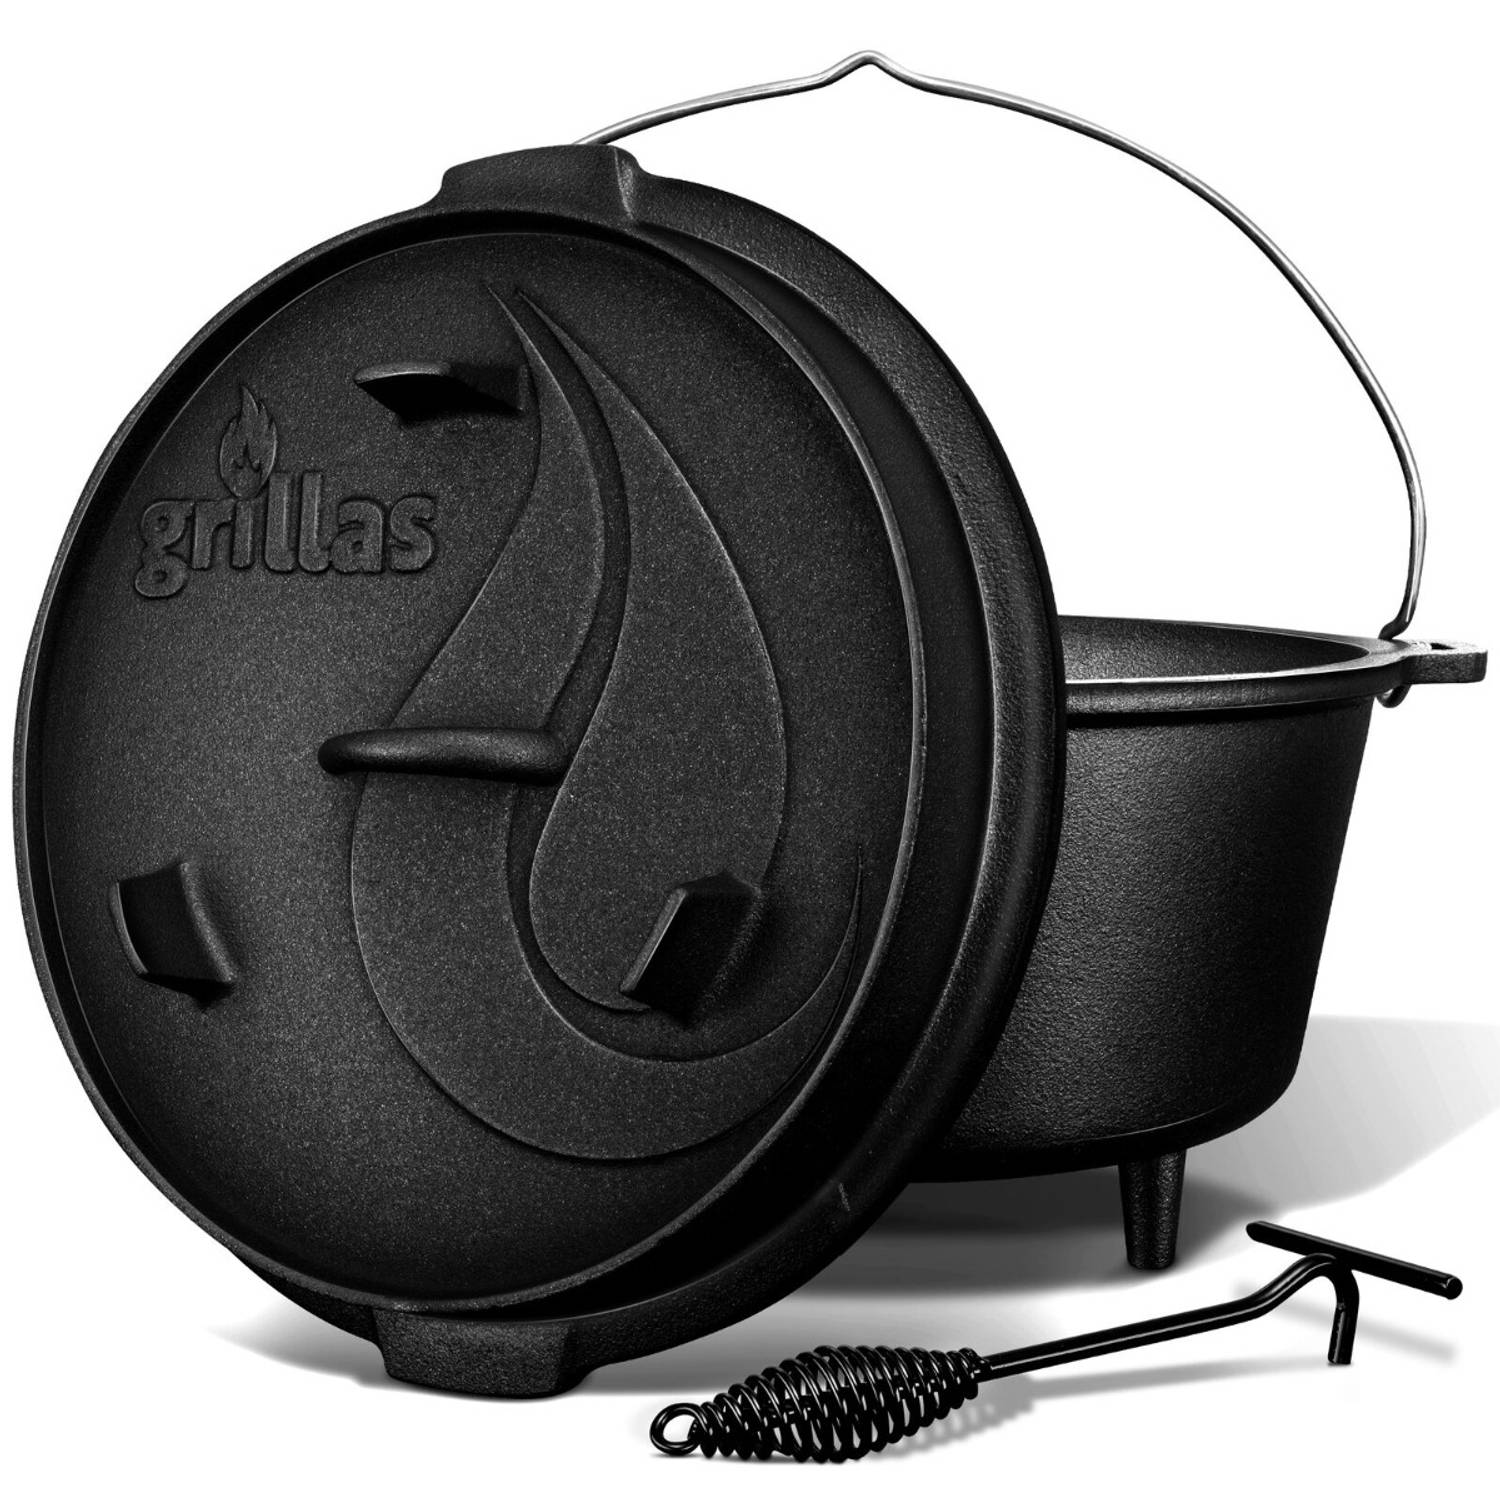 Grillas- Dutch Oven, 7.3L, BBQ pan, gietijzer, met pootjes, B